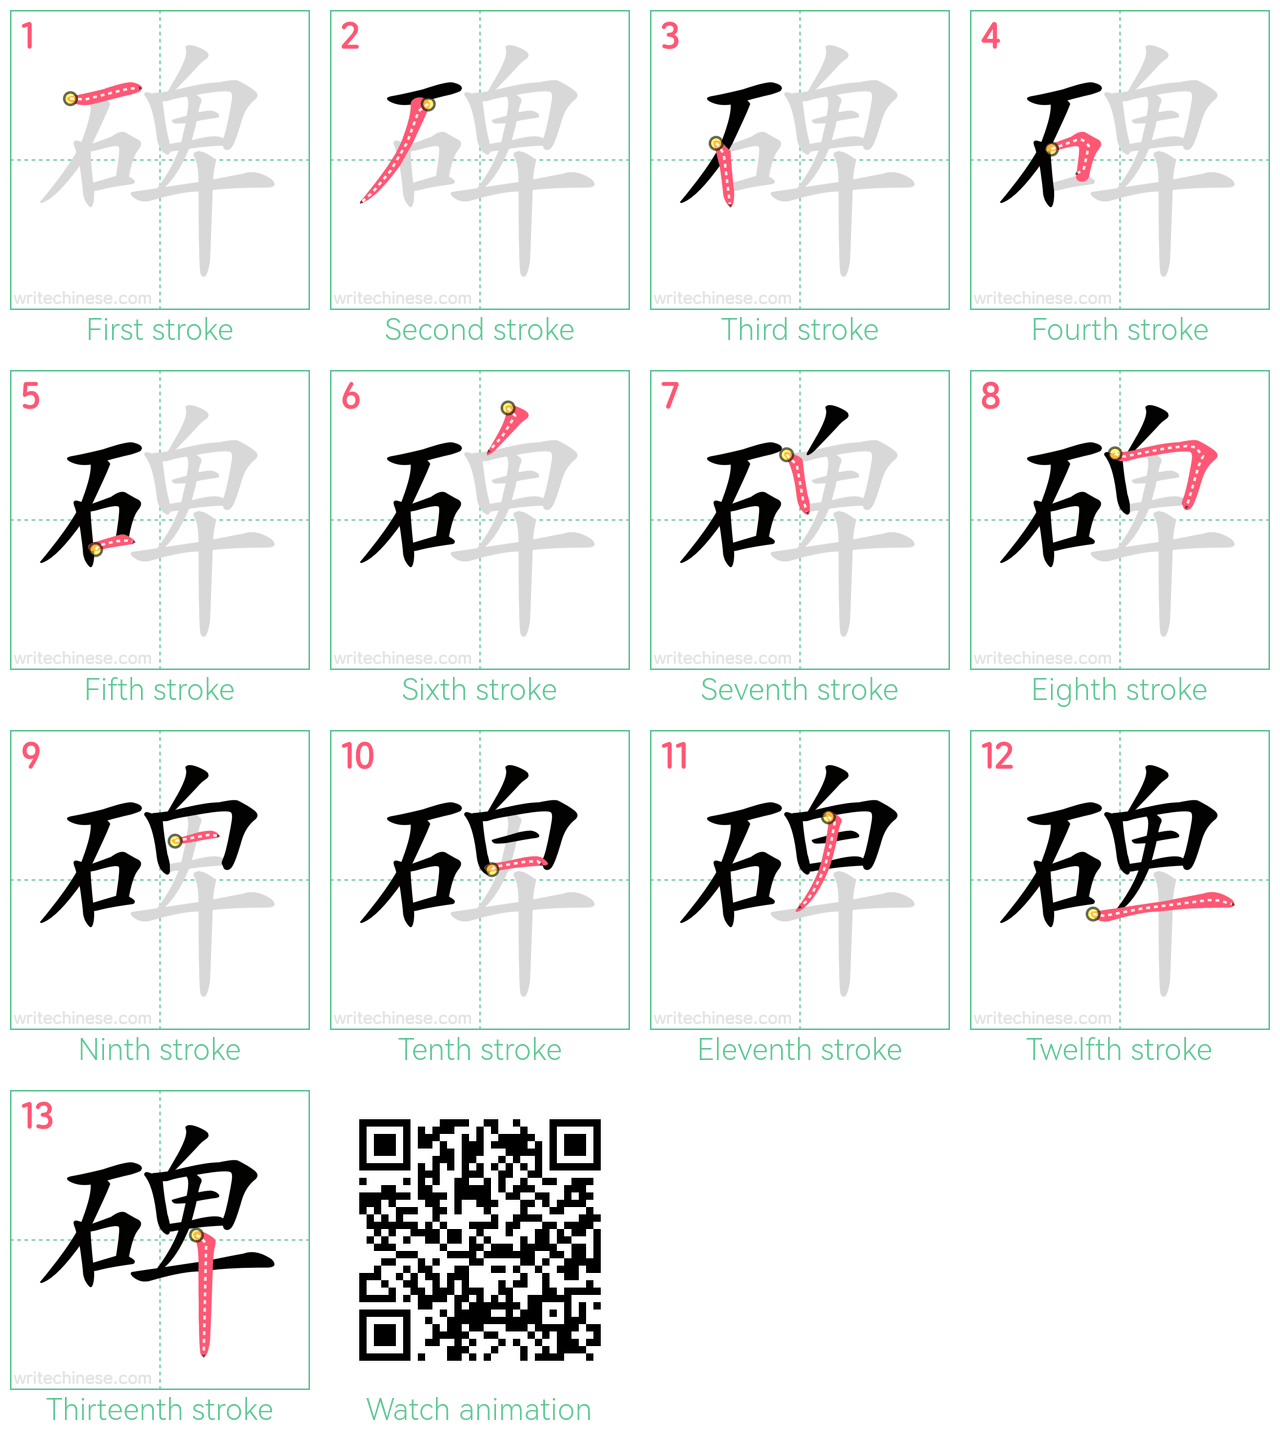 碑 step-by-step stroke order diagrams